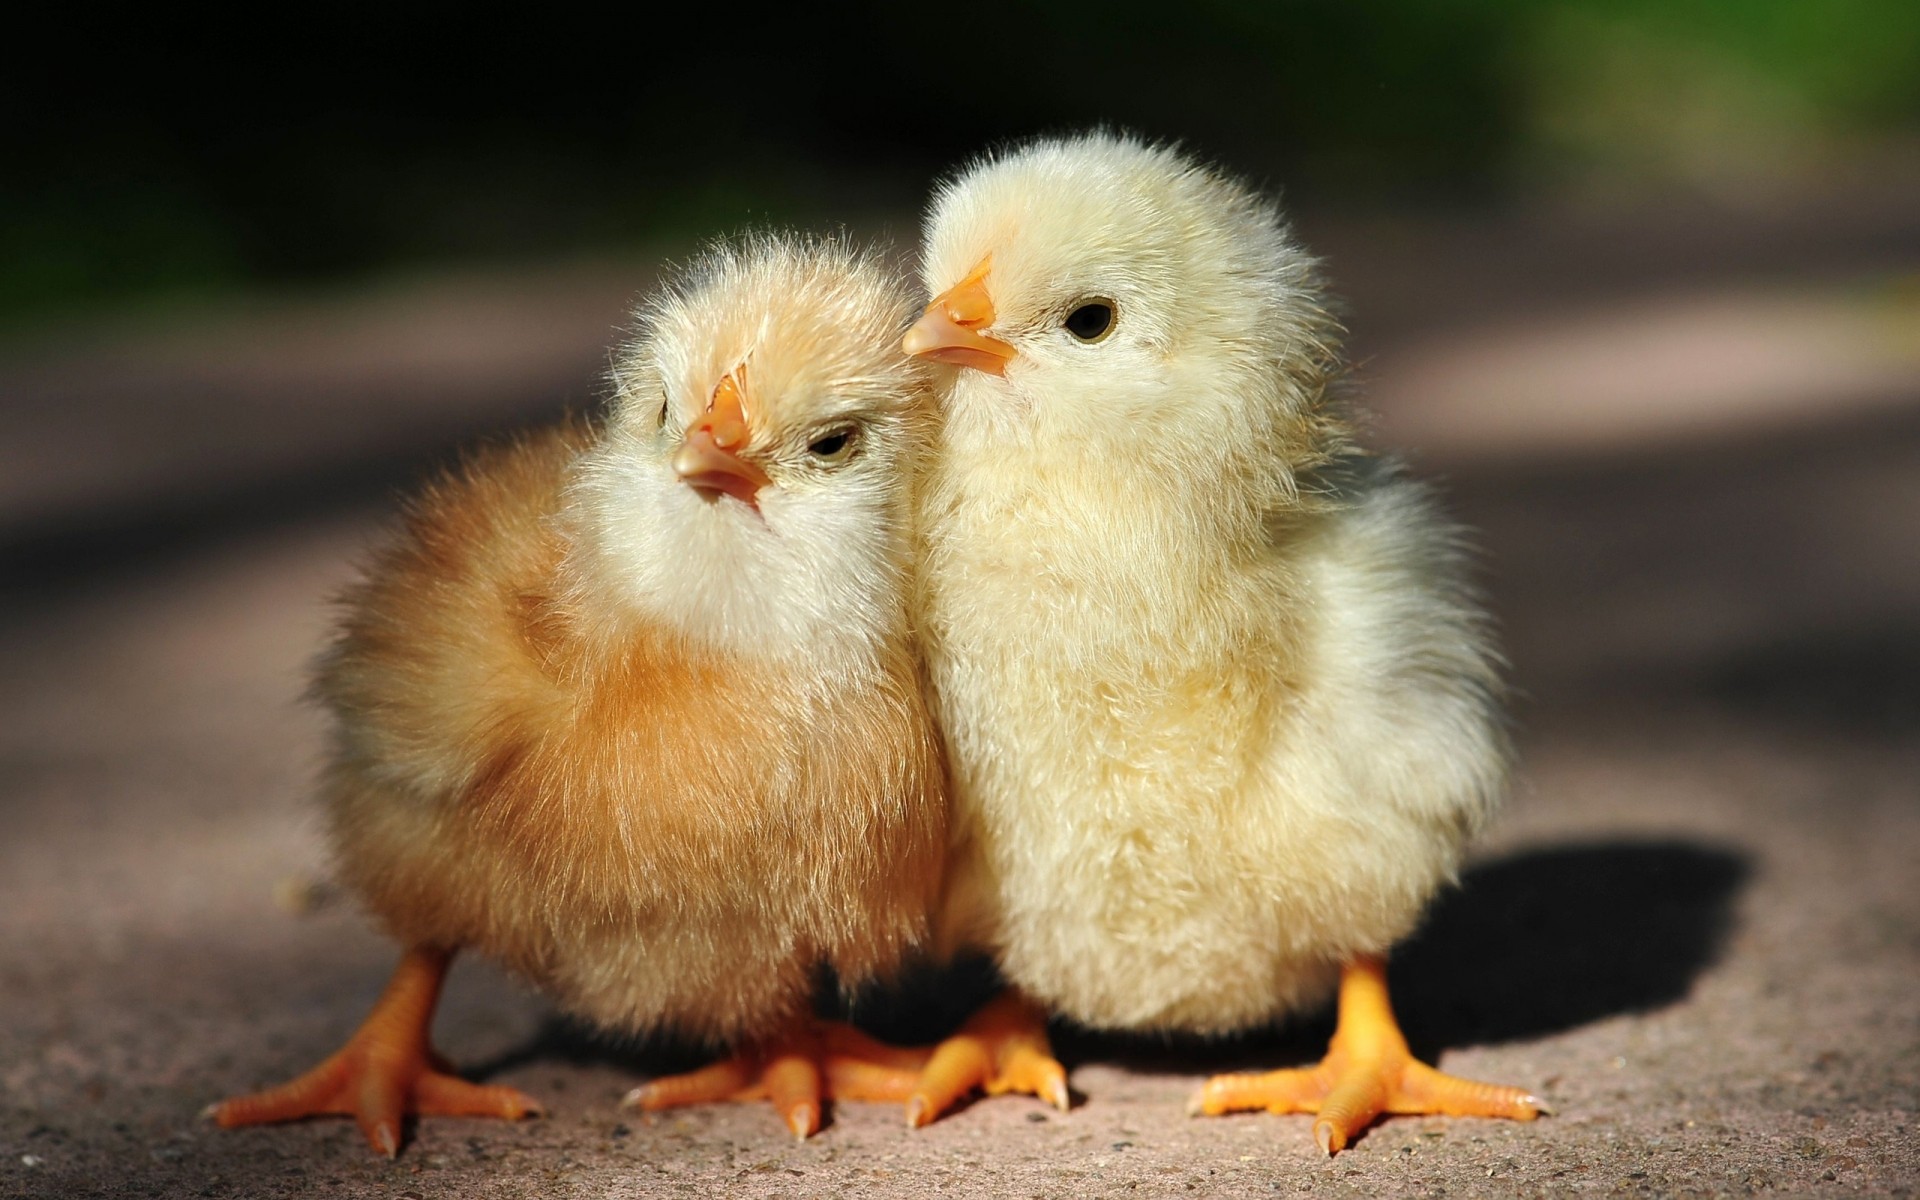 птенцы птицы дам пасха птица пуховый милые новорожденный мало курица ребенок животное нечетко ферма смешно курочка перо крошечные два природа